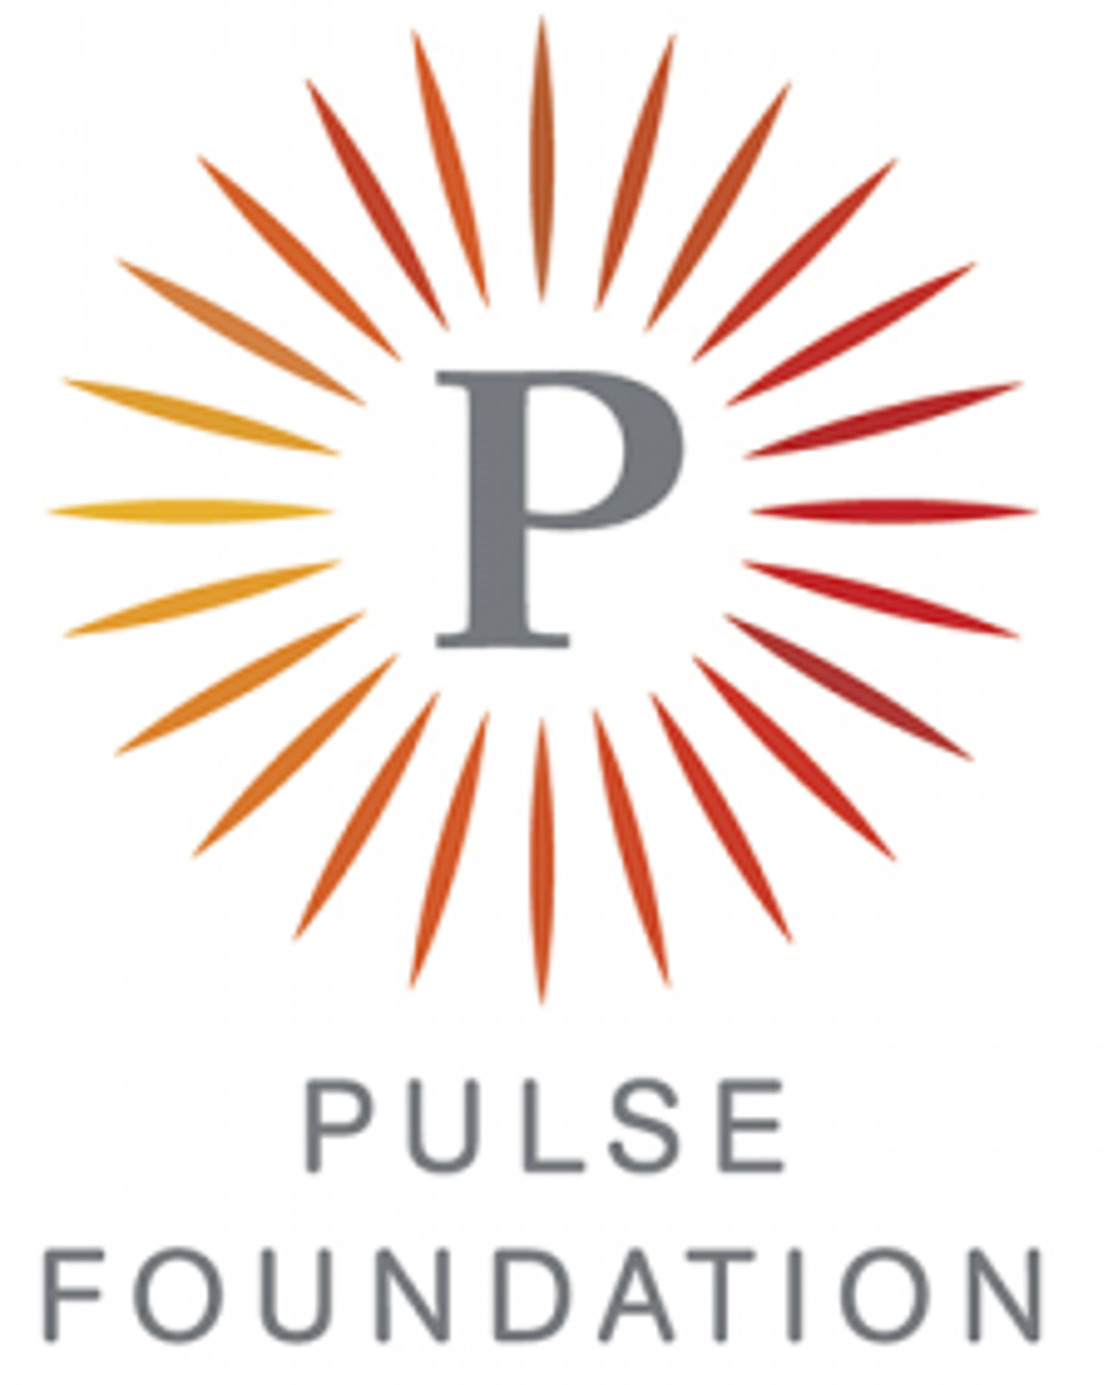 La Fondation Pulse et la Fondation Degroof Petercam s’associent pour lancer un programme innovant à destination des entrepreneurs.neuses ayant fait faillite